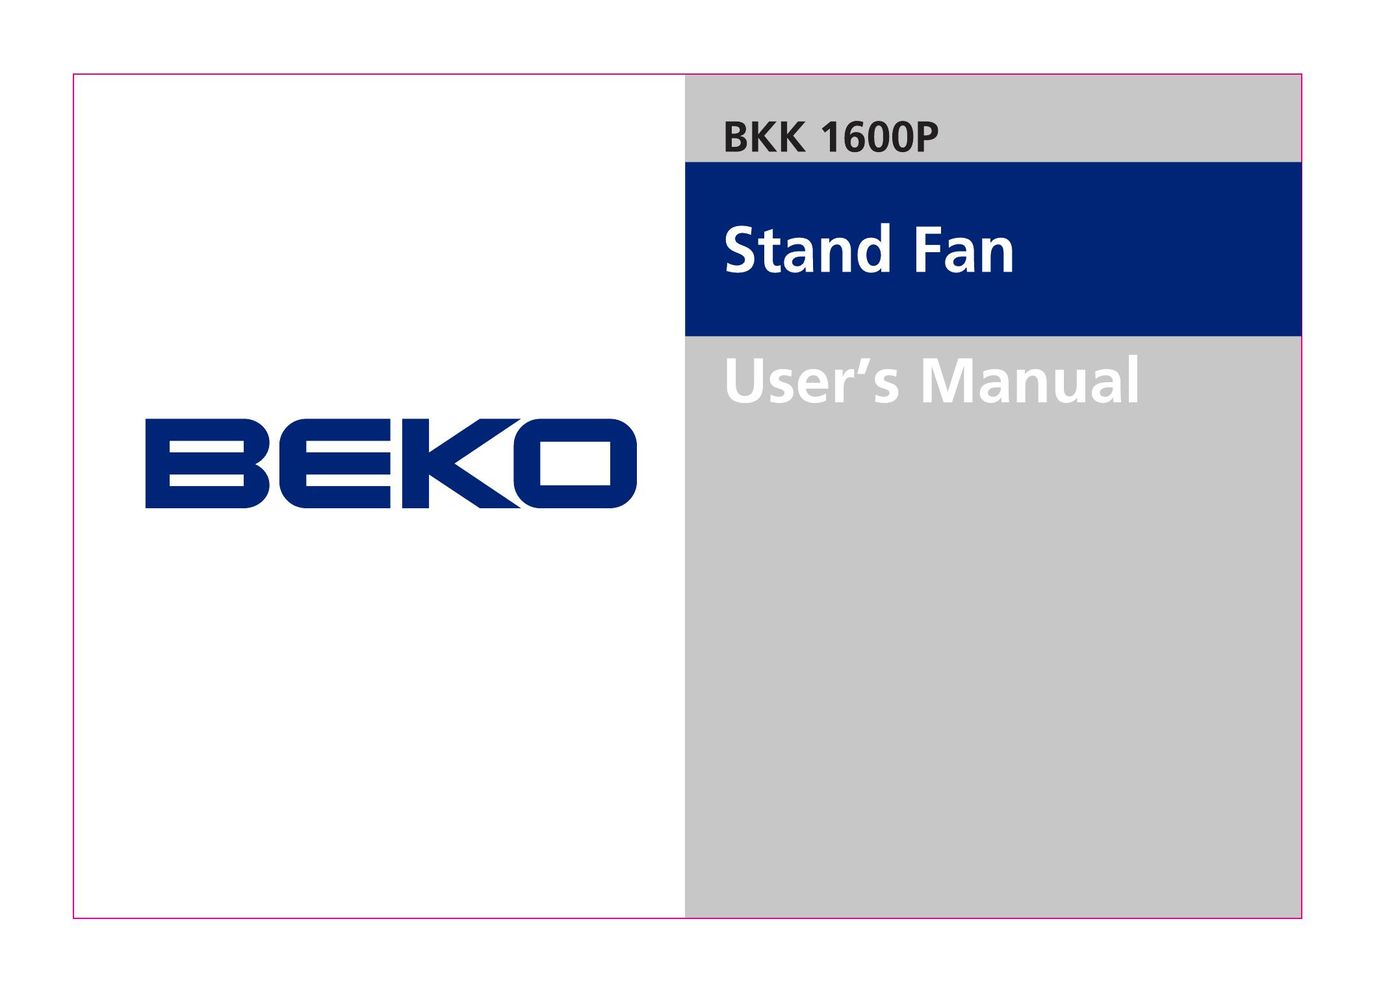 Beko BKK 1600 P Fan User Manual